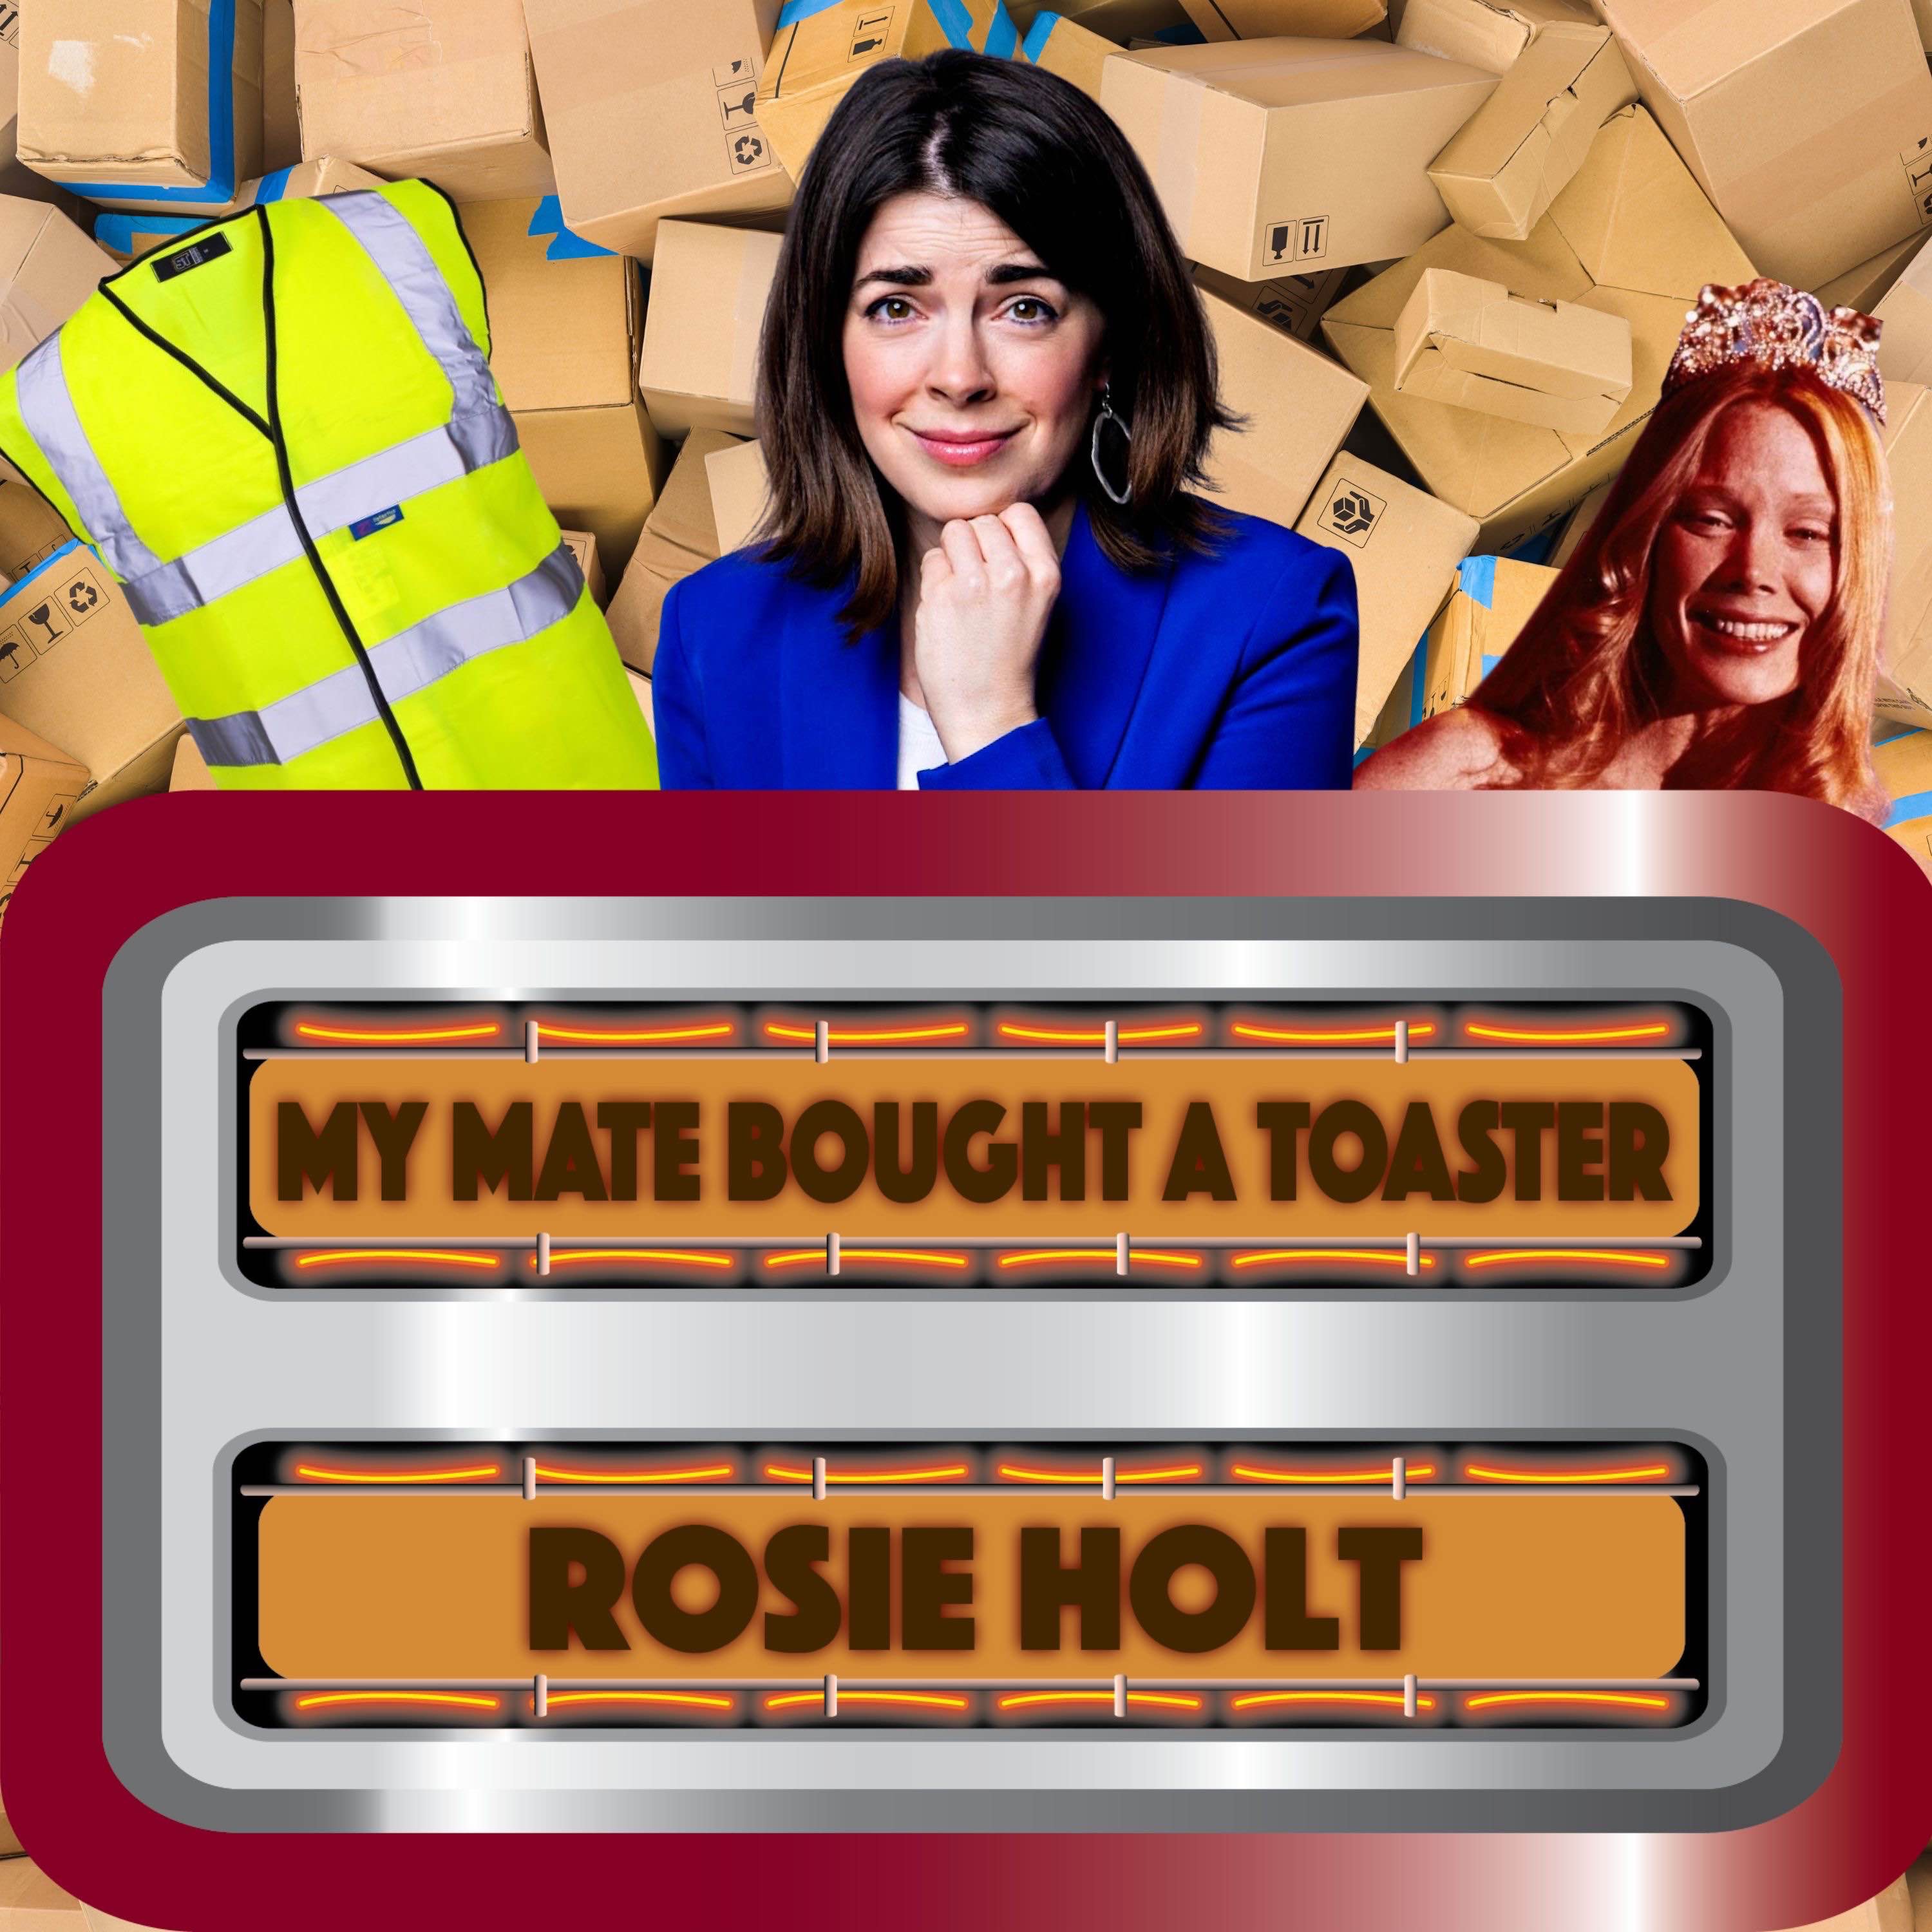 Rosie Holt